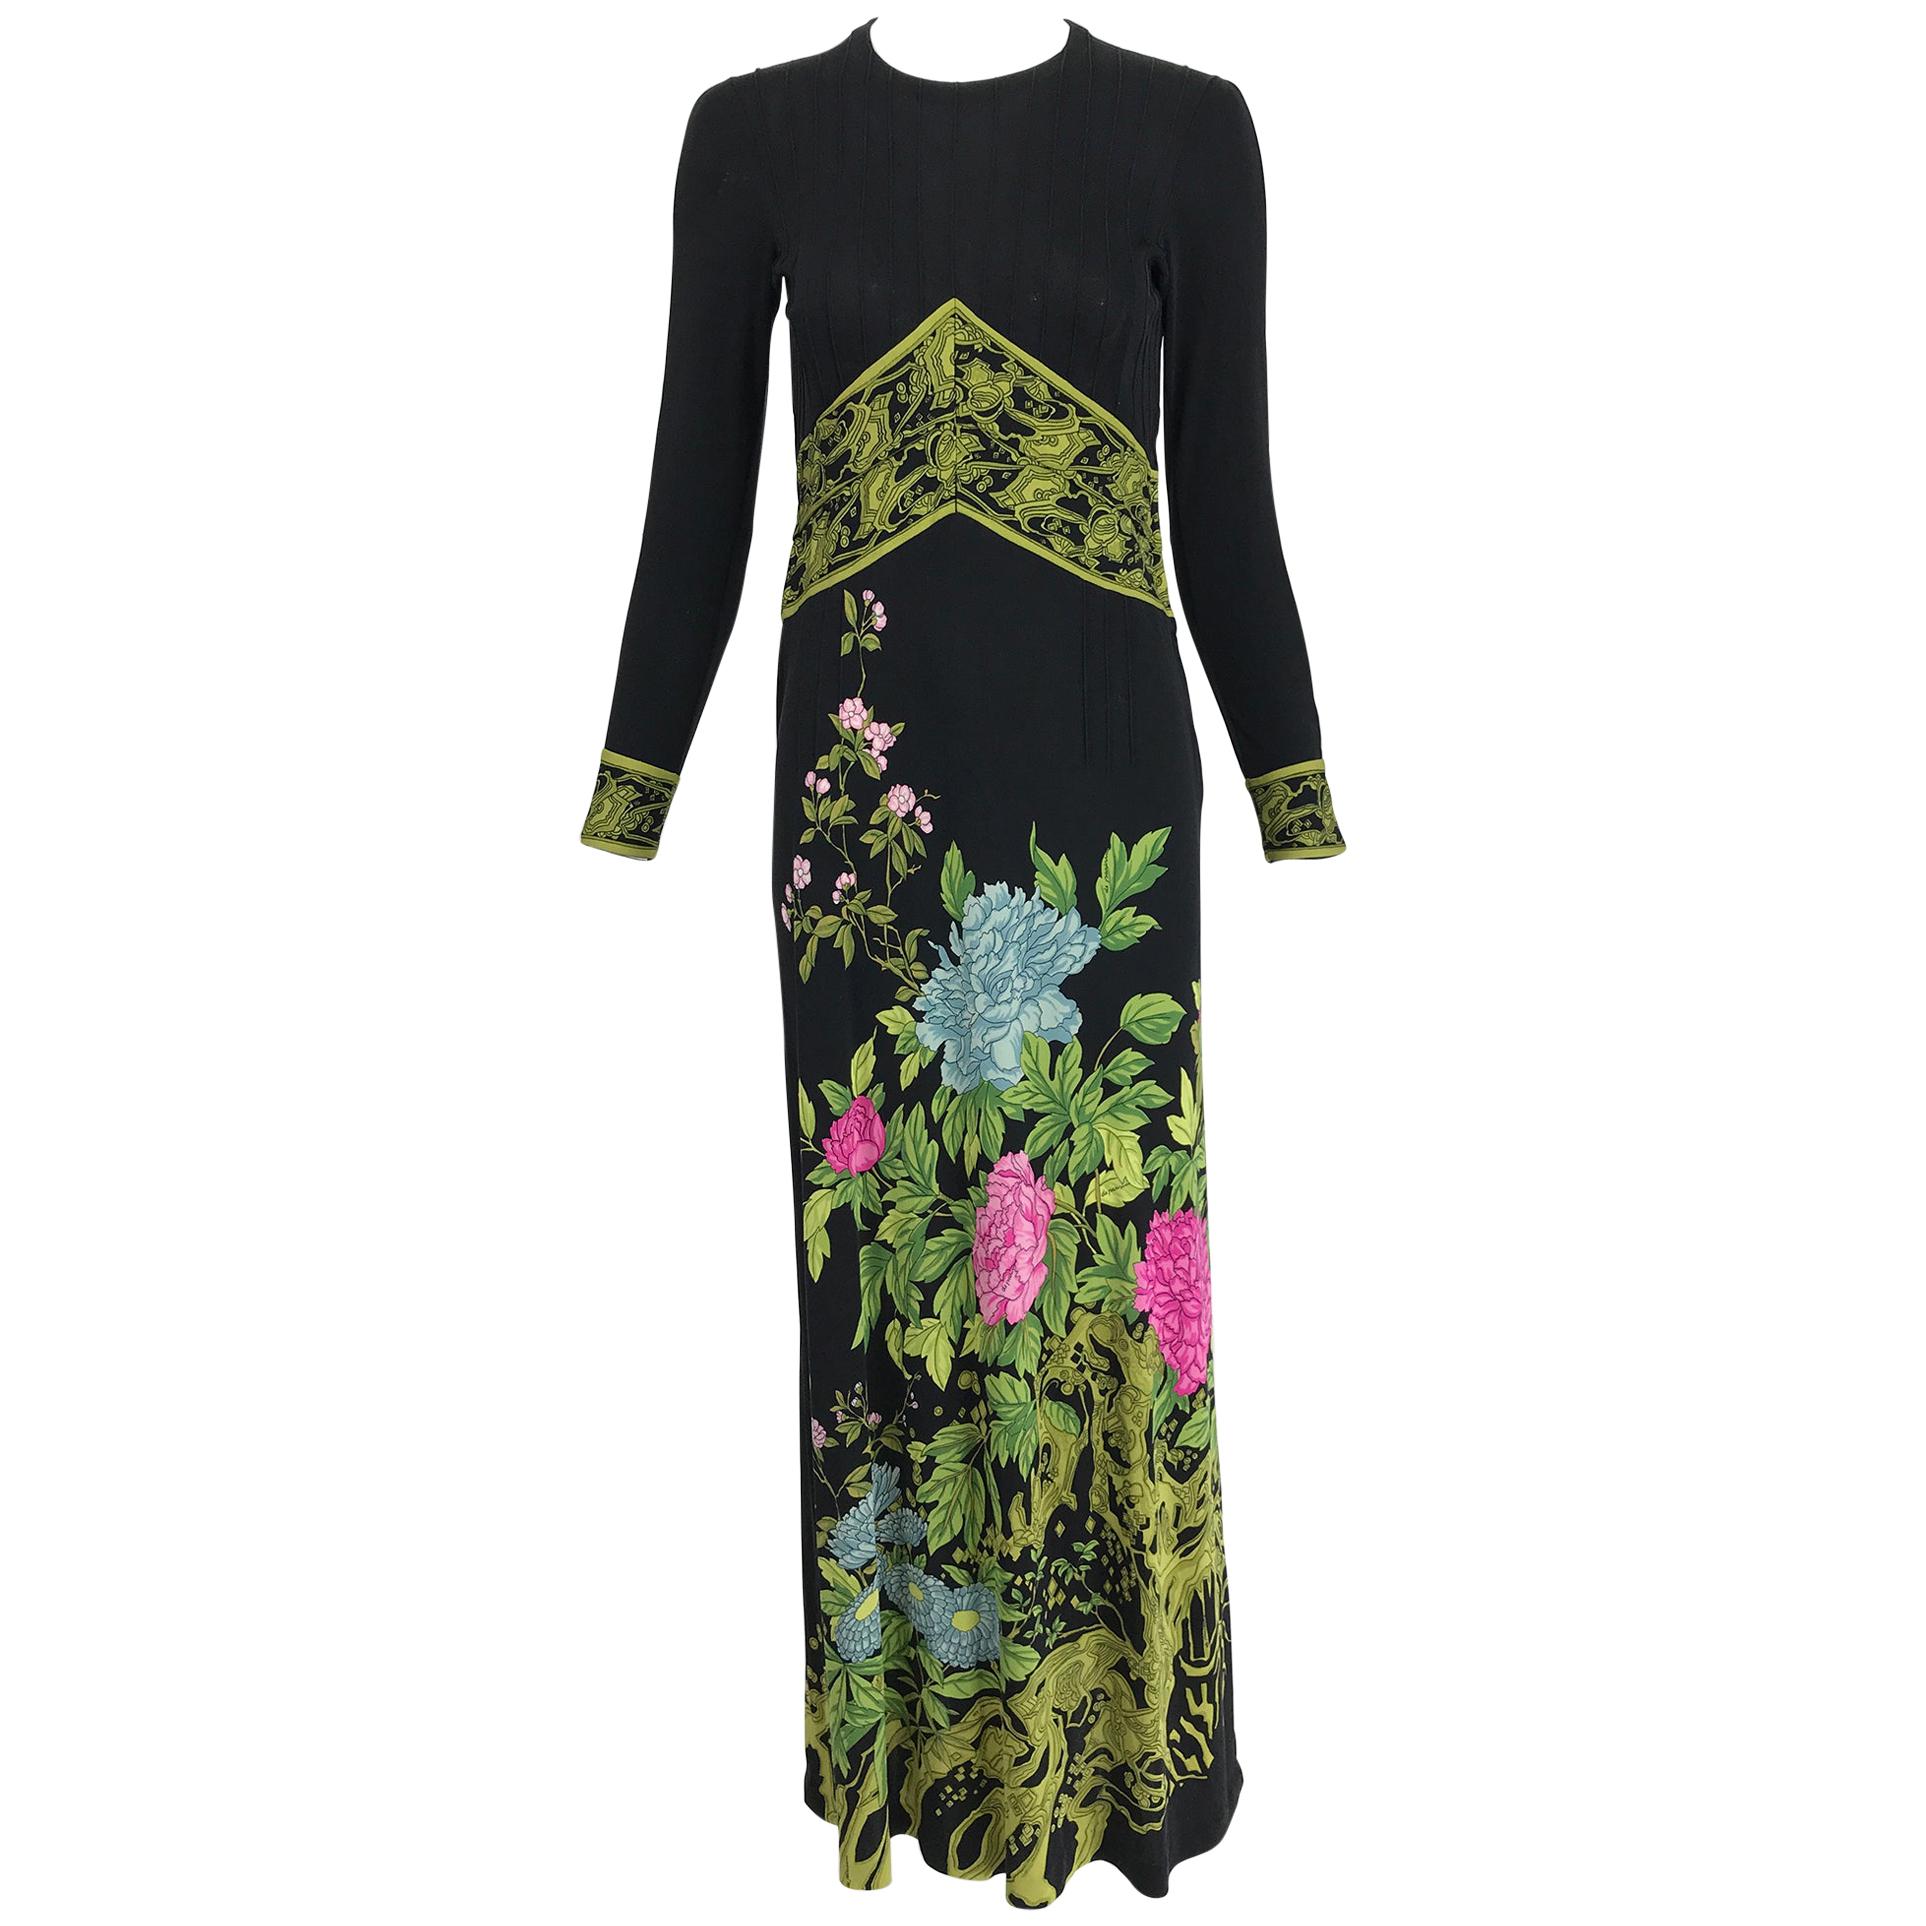 Vintage de Parisini Signed Silk Jersey Floral Print Maxi Dress 1960s